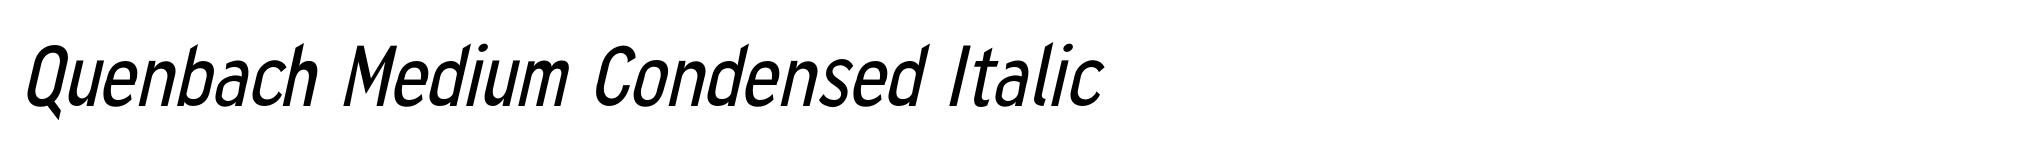 Quenbach Medium Condensed Italic image